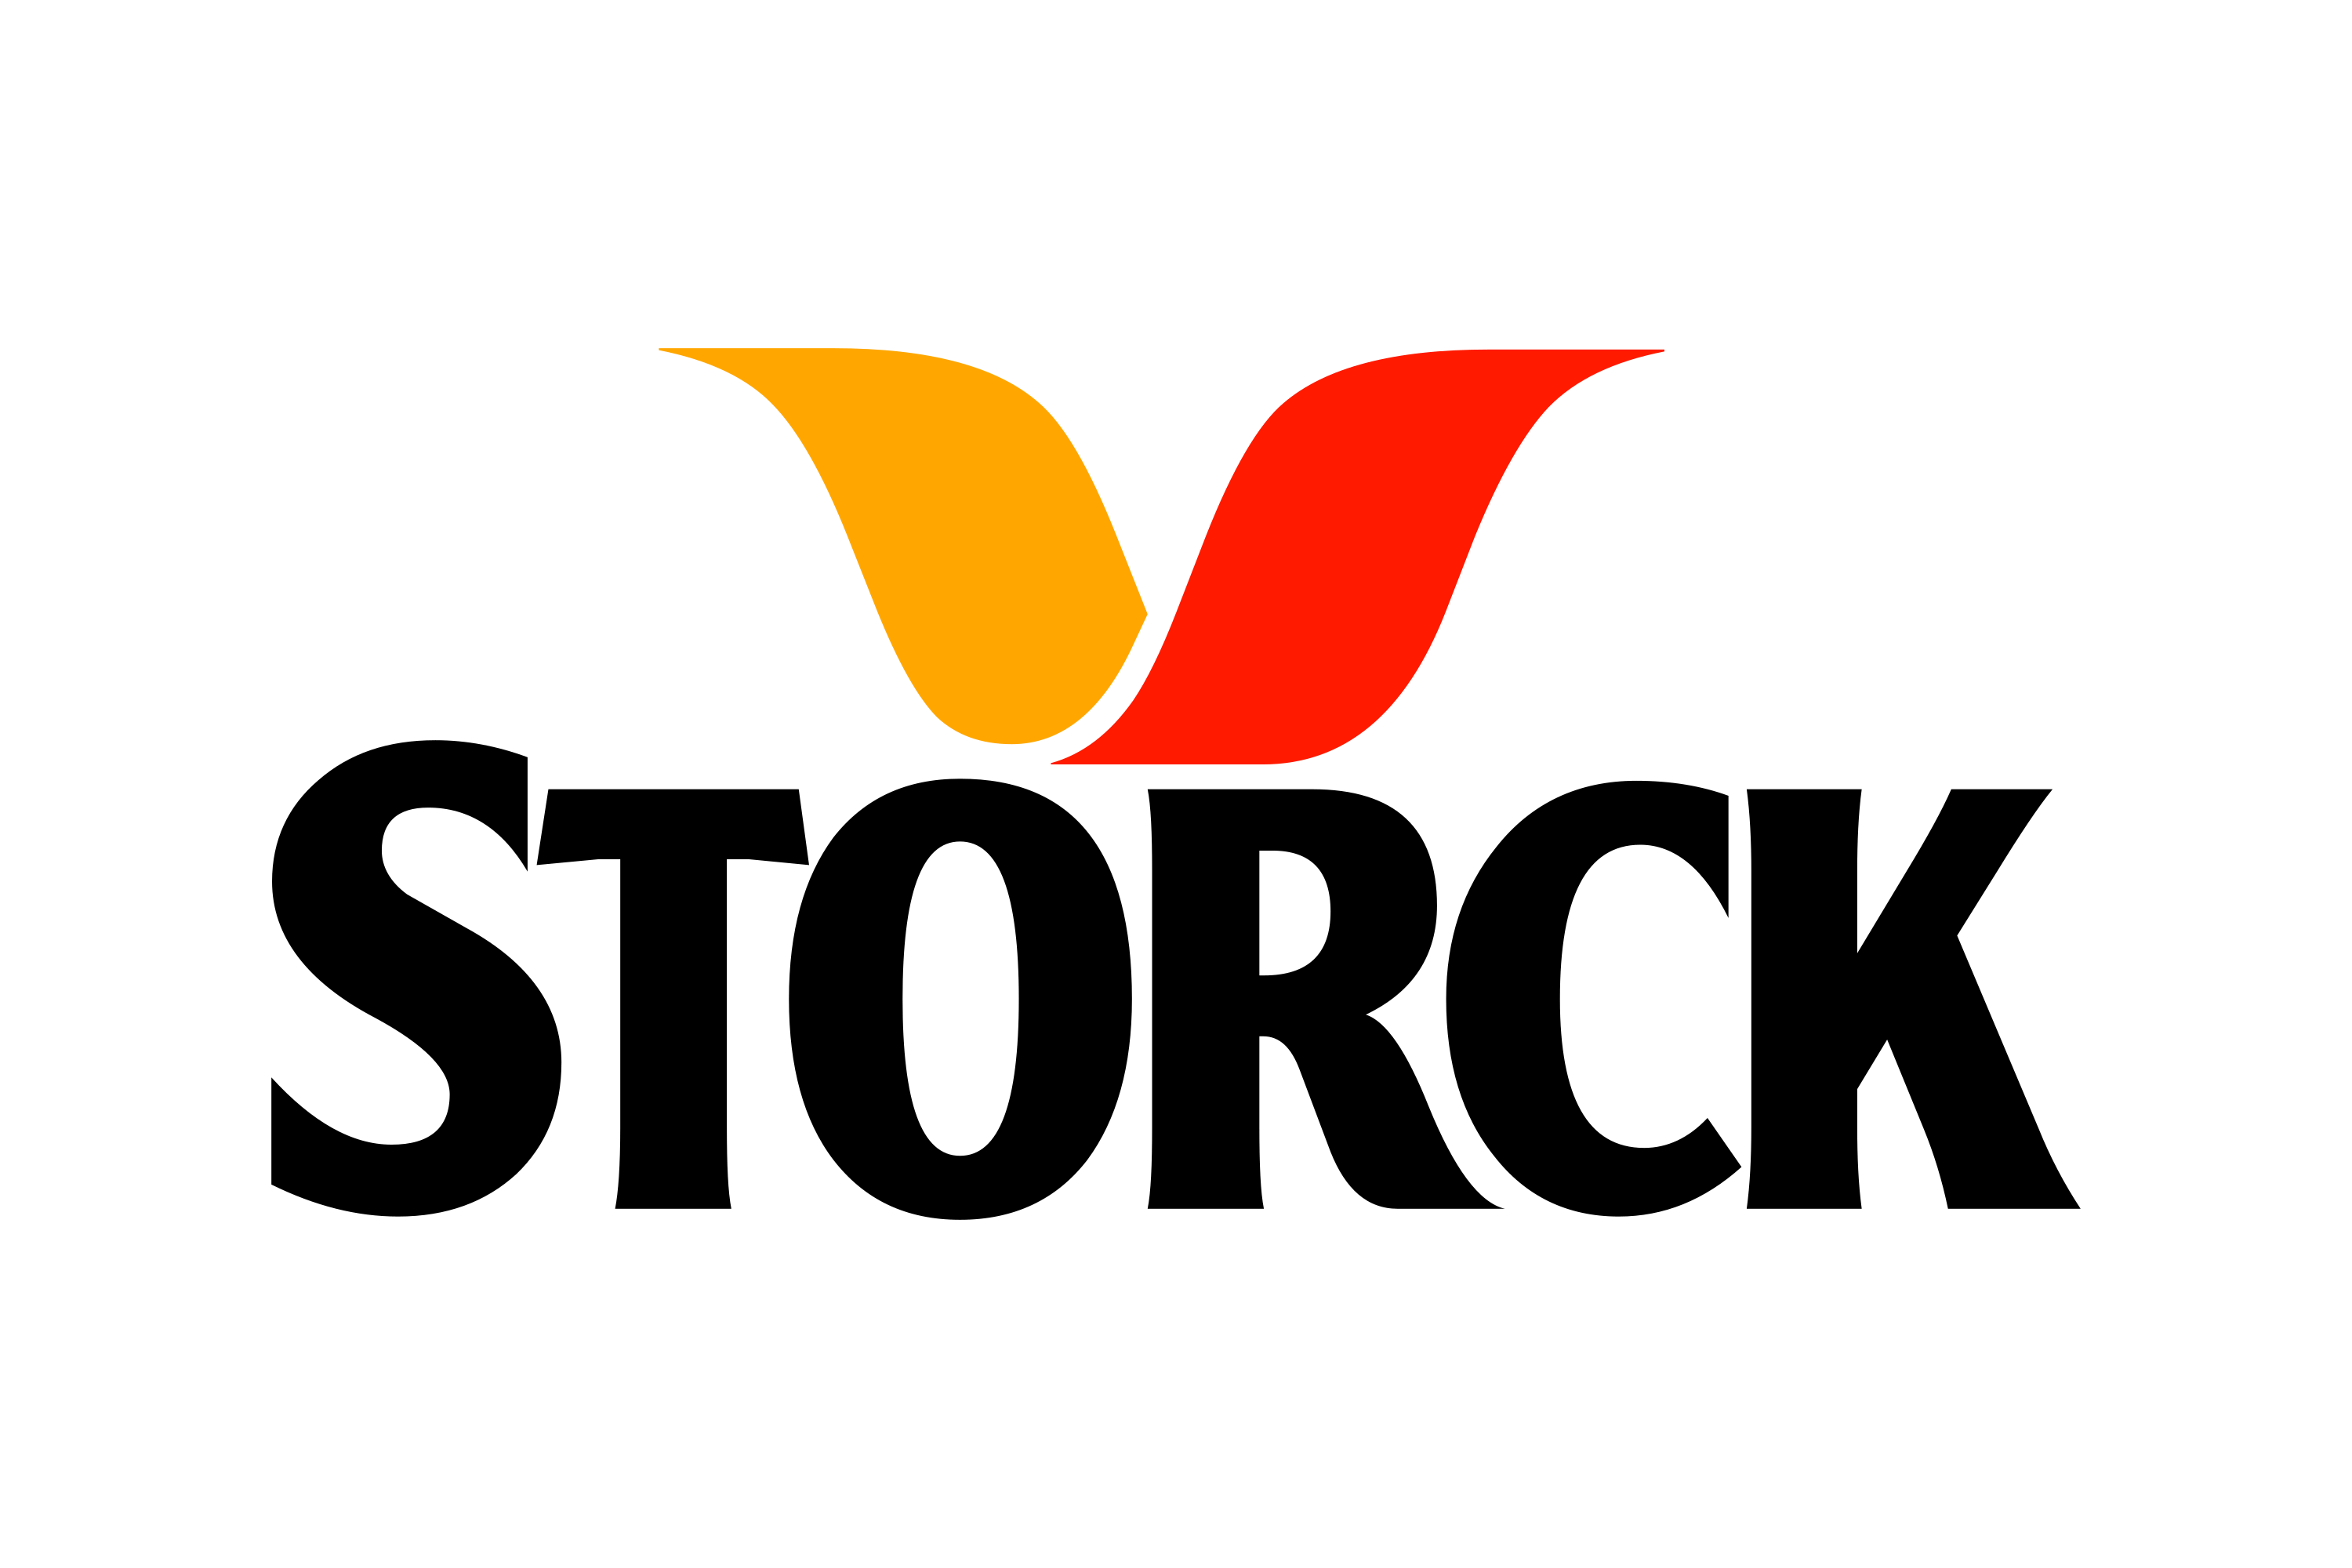 August Storck Logo